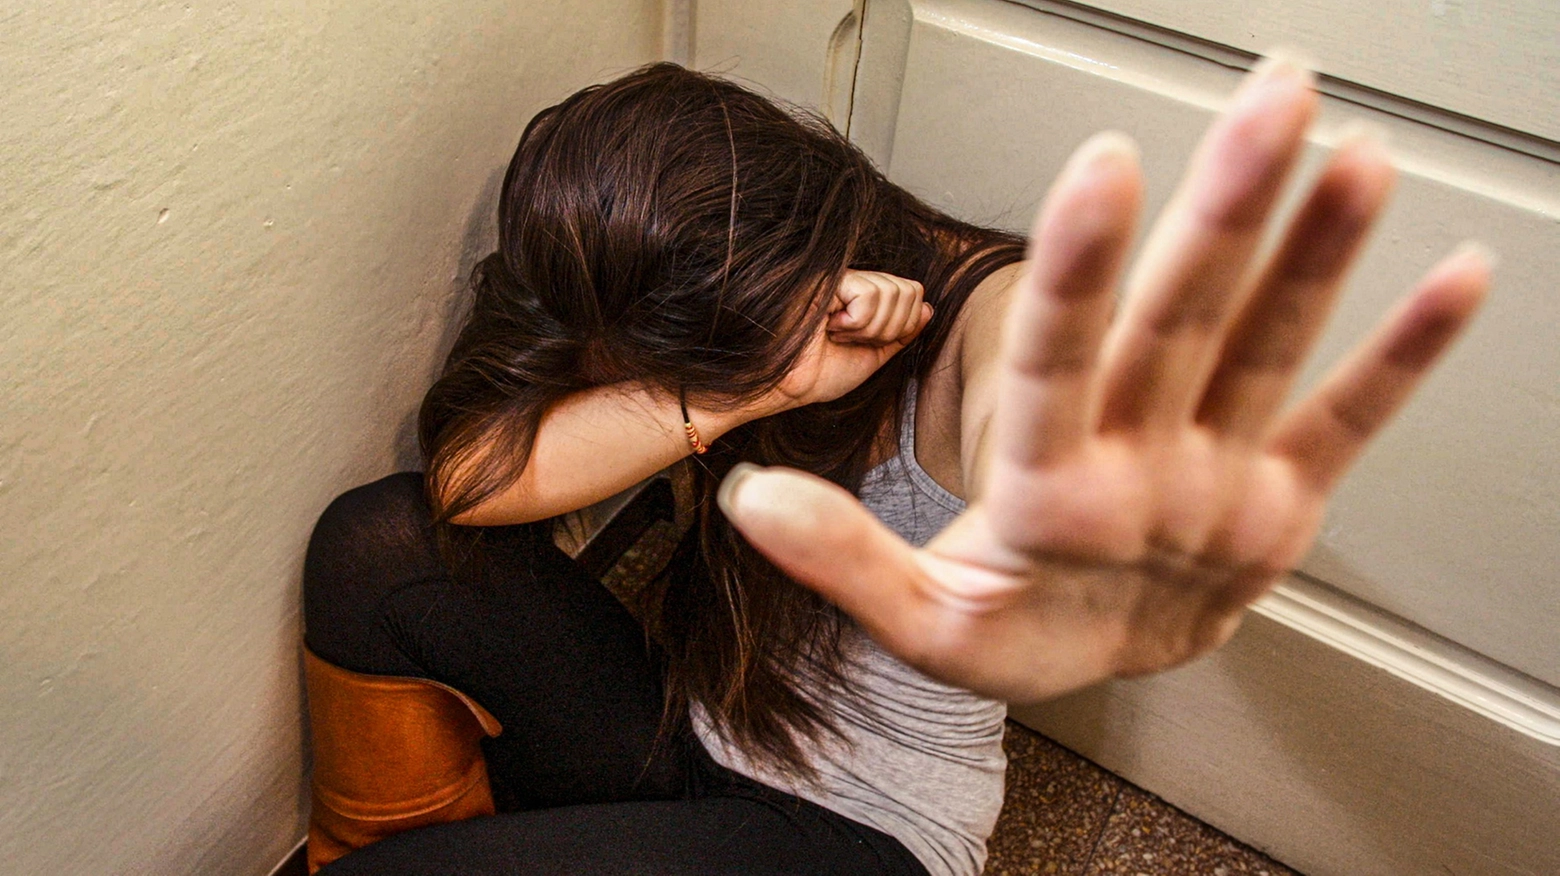 Gli agenti hanno bloccato il 33enne mentre molestava una donna in ascensore